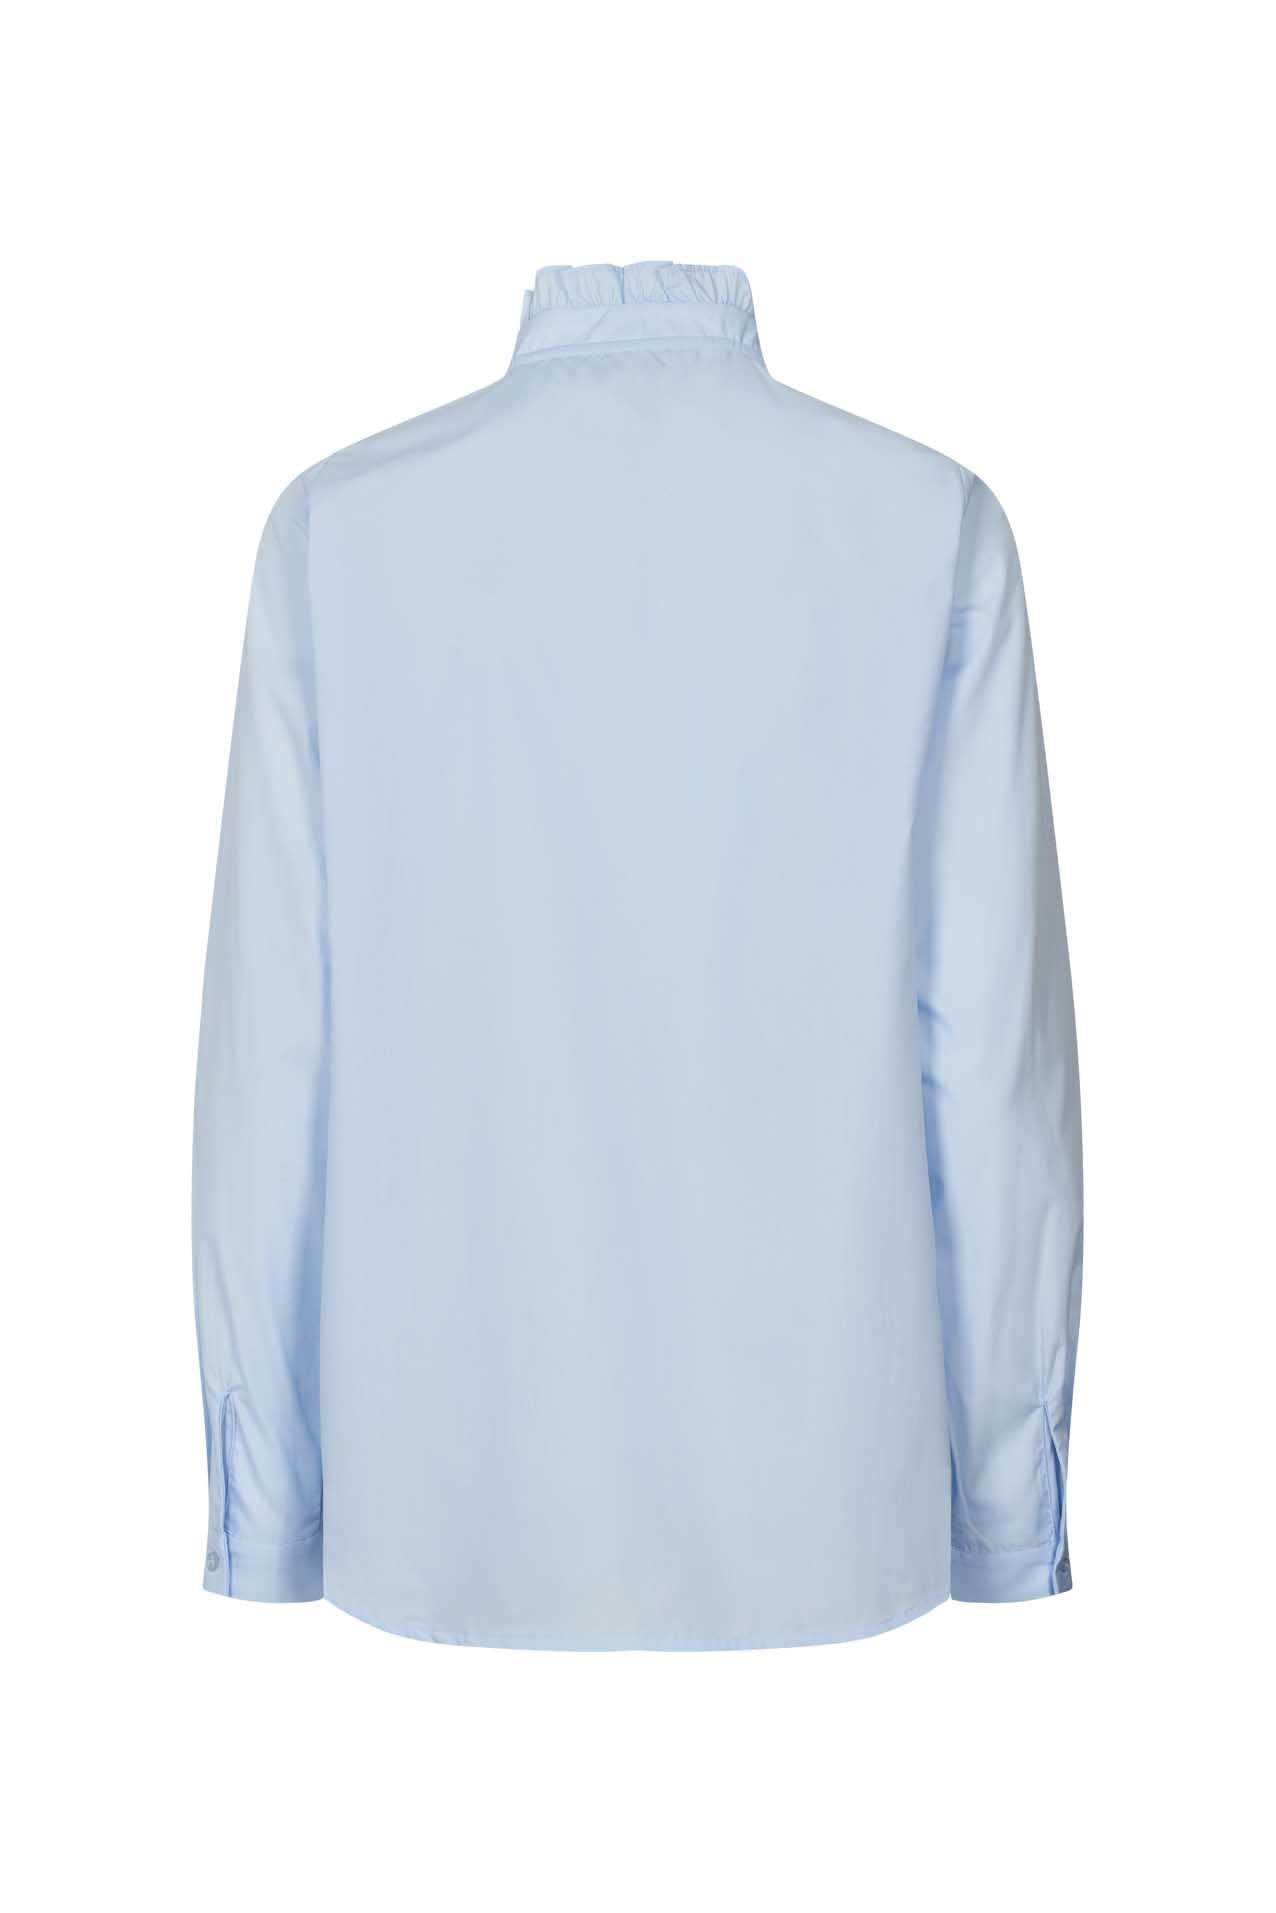 Lollys Laundry Hobart Shirt - Light Blue